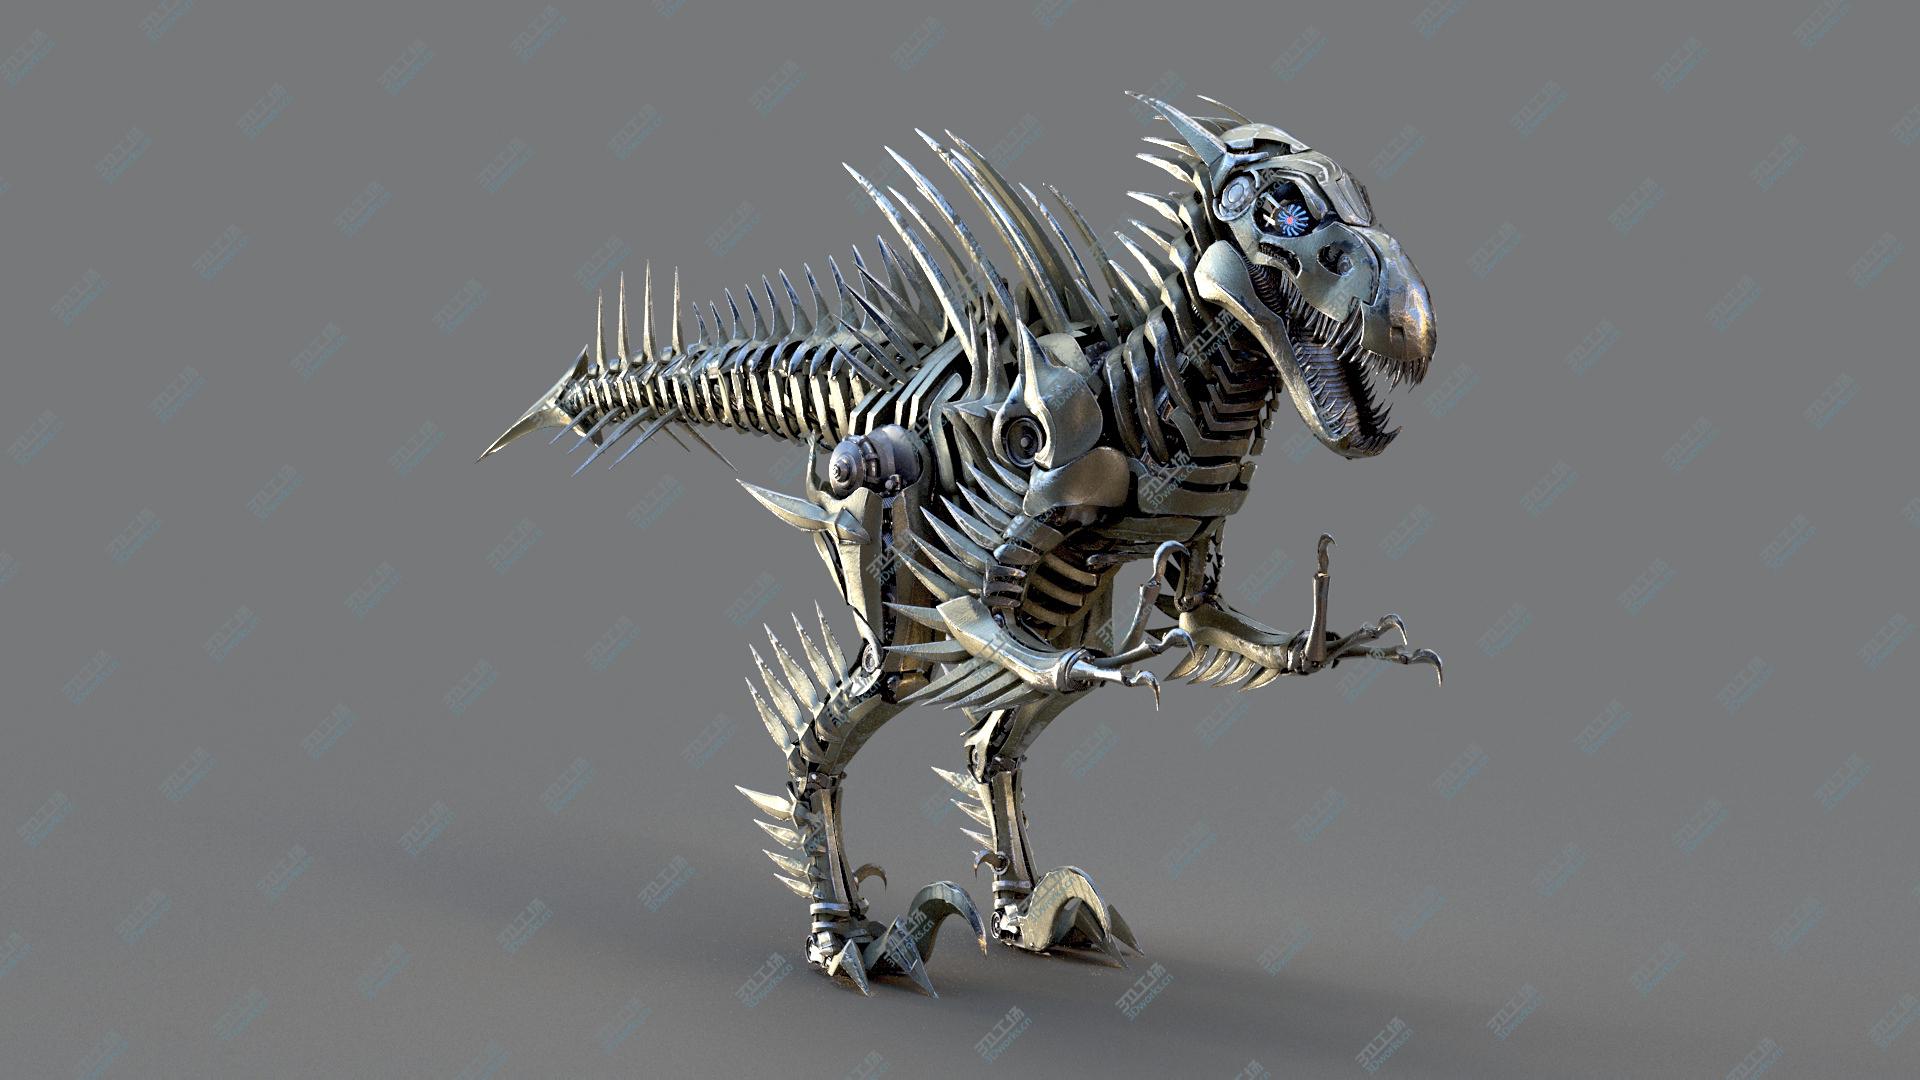 images/goods_img/202104092/Velociraptor Mech Robot model/4.jpg